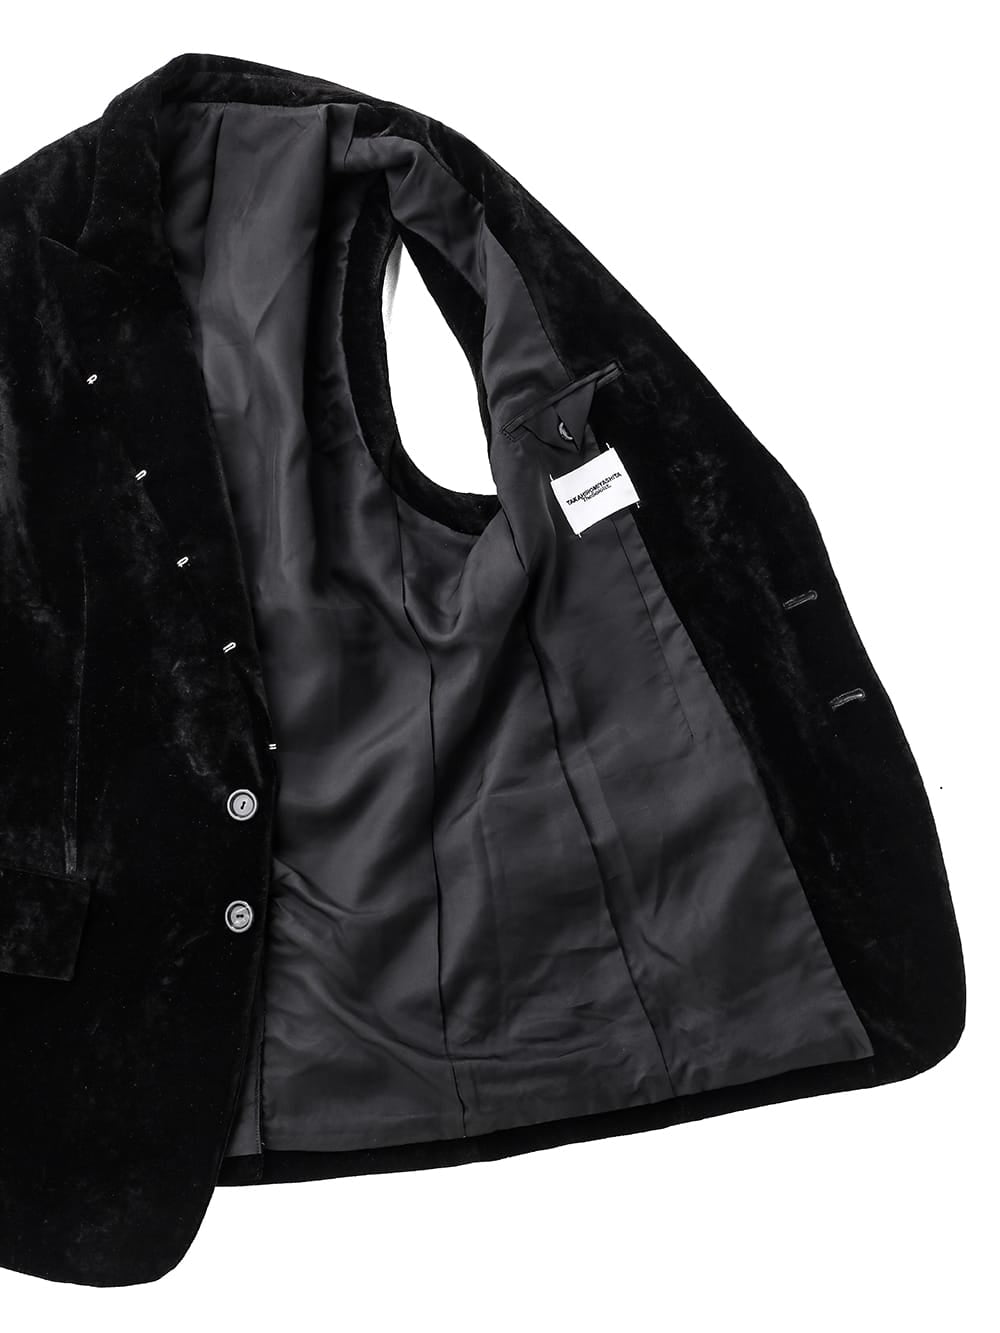 right - left sleeveless peak lapel jacket (velvet).